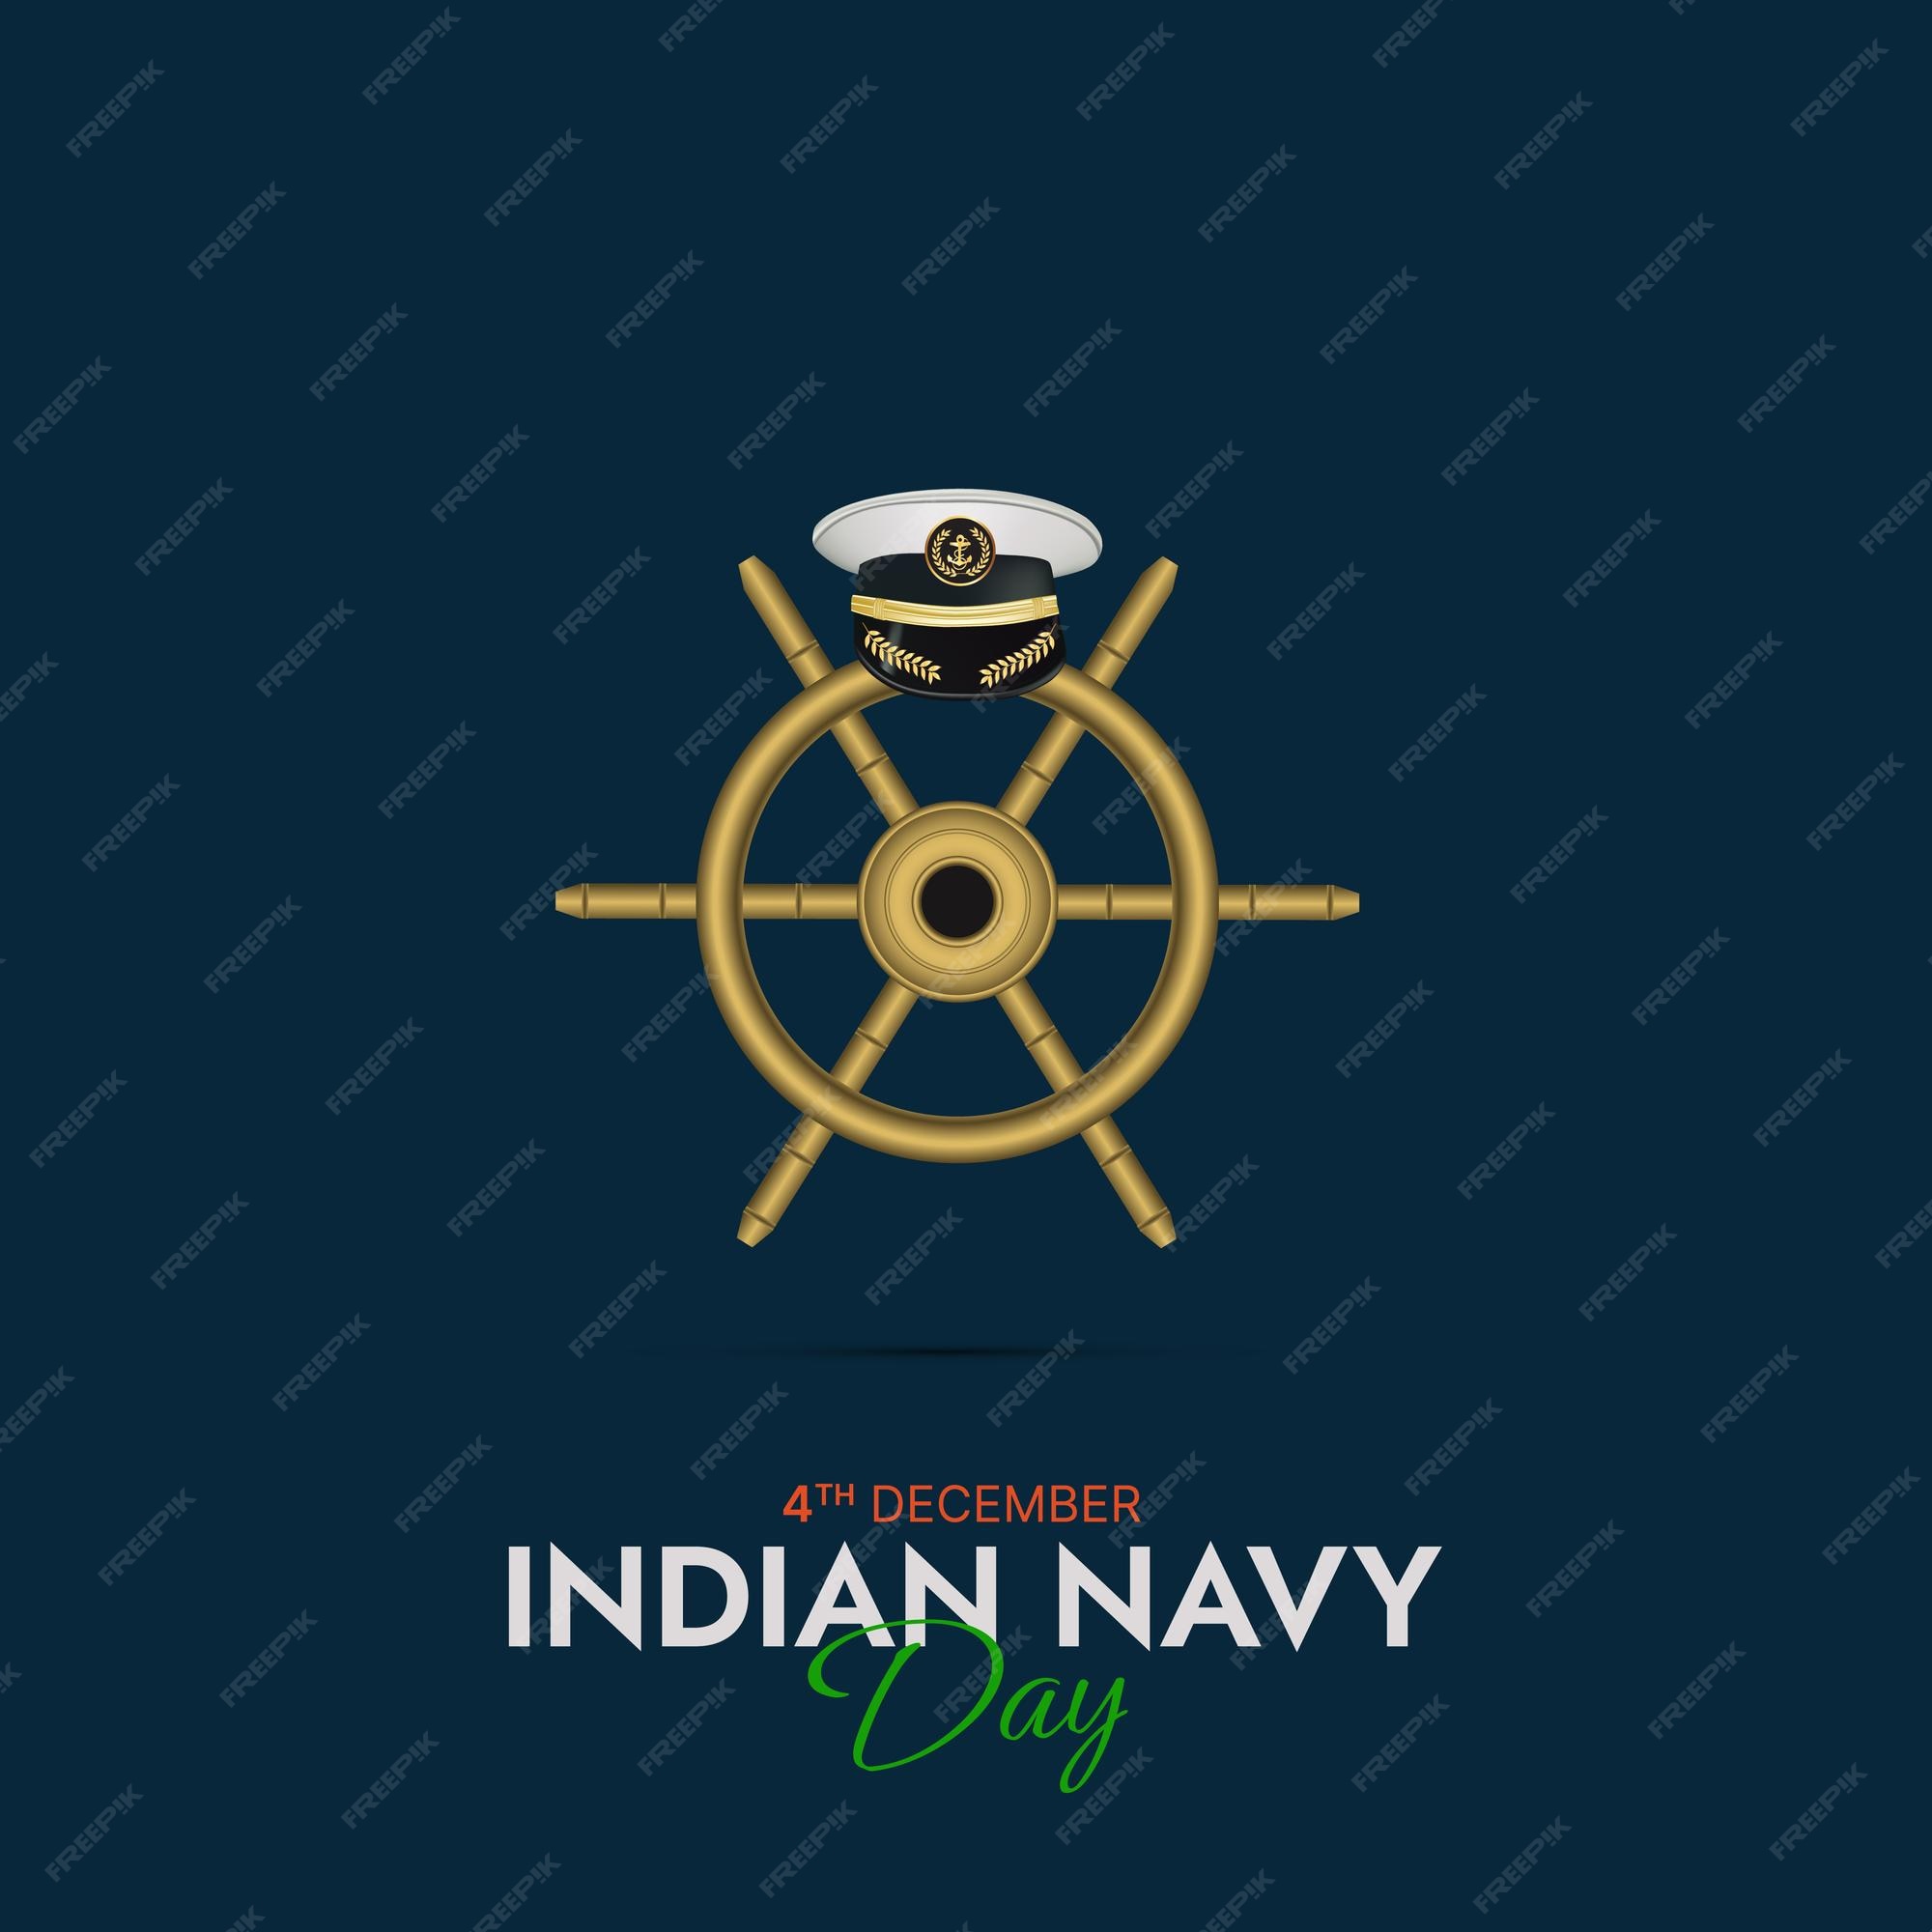 Indian Navy Images - Free Download on Freepik